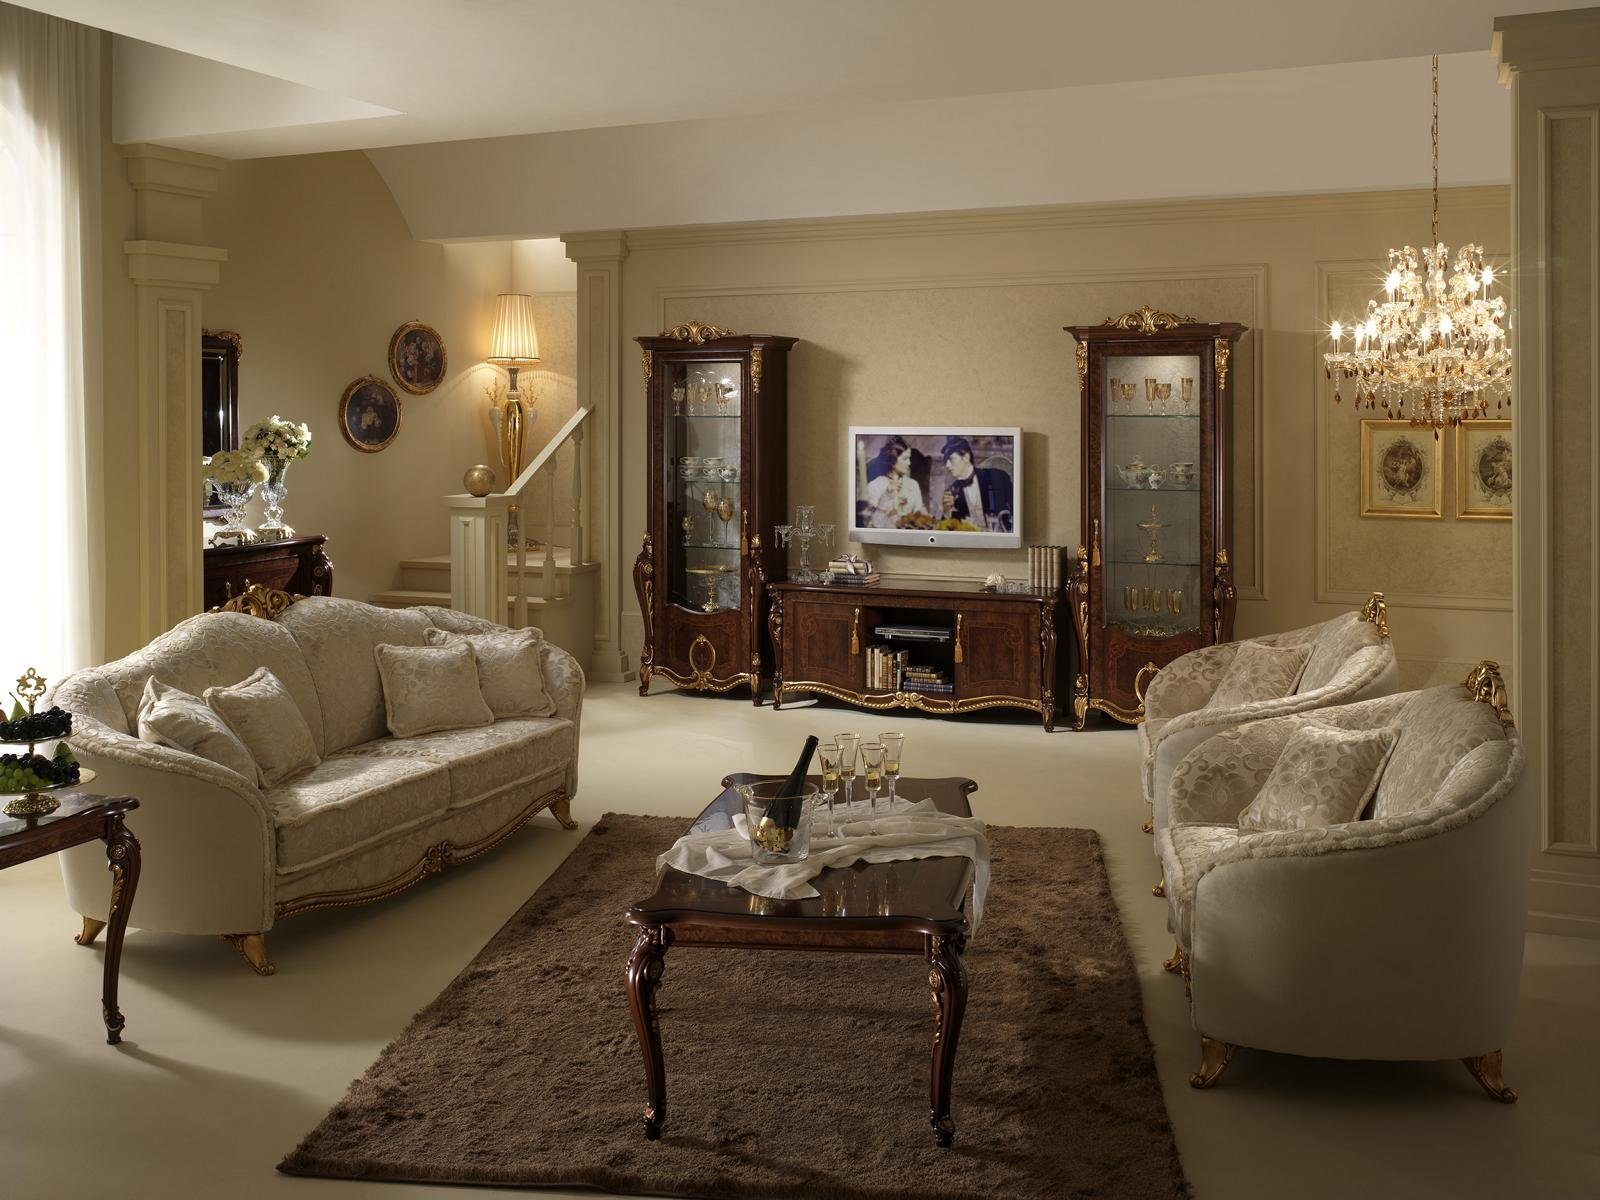 Klasse arredoclassic™ Luxus Sofagarnitur Wohnzimmer-Set, JVmoebel 3+2 Möbel Couch Sofa Italienische Neu